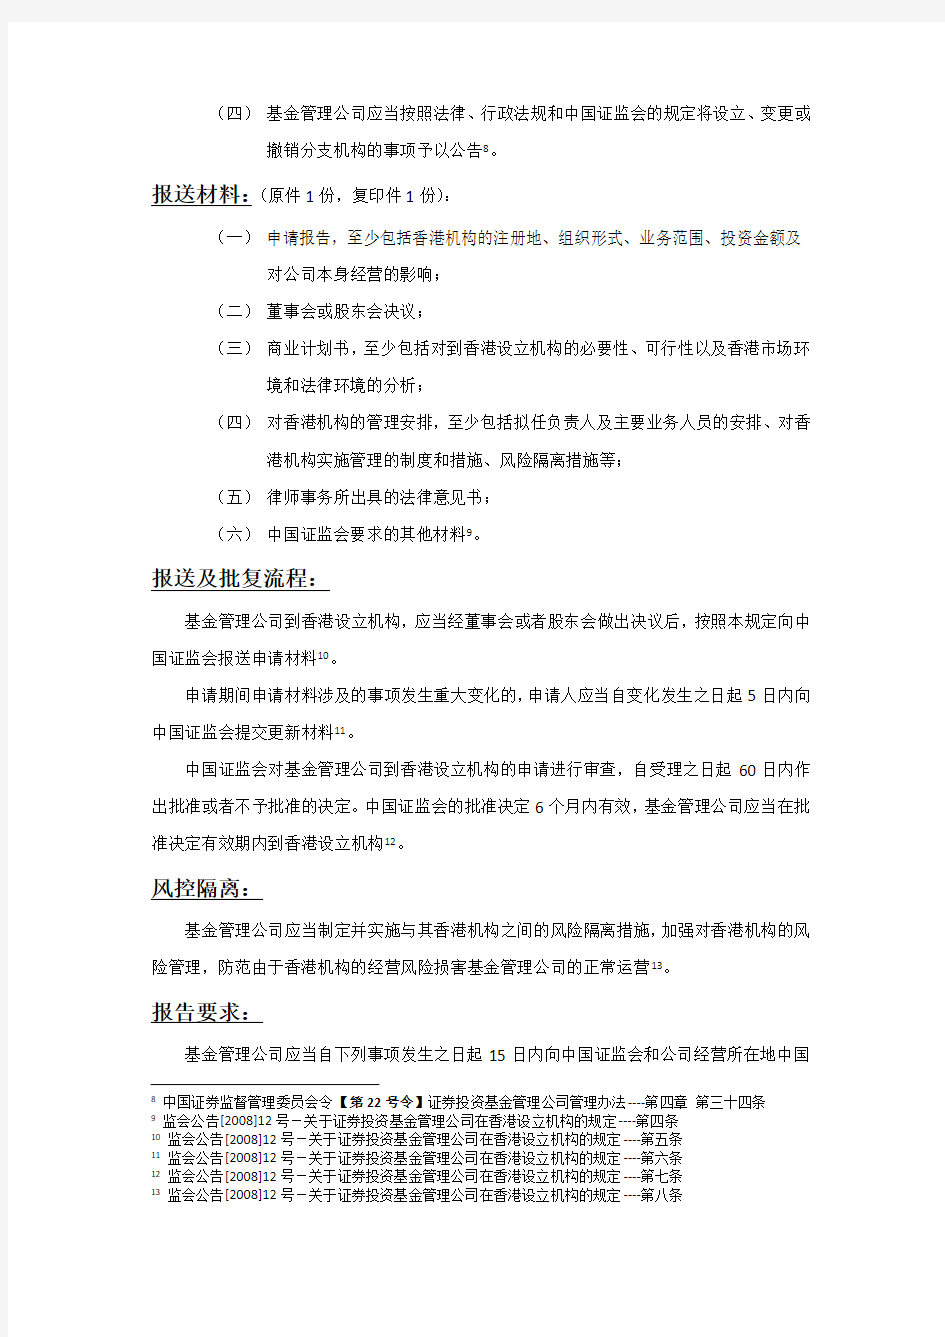 香港设立资产管理公司的法规要求